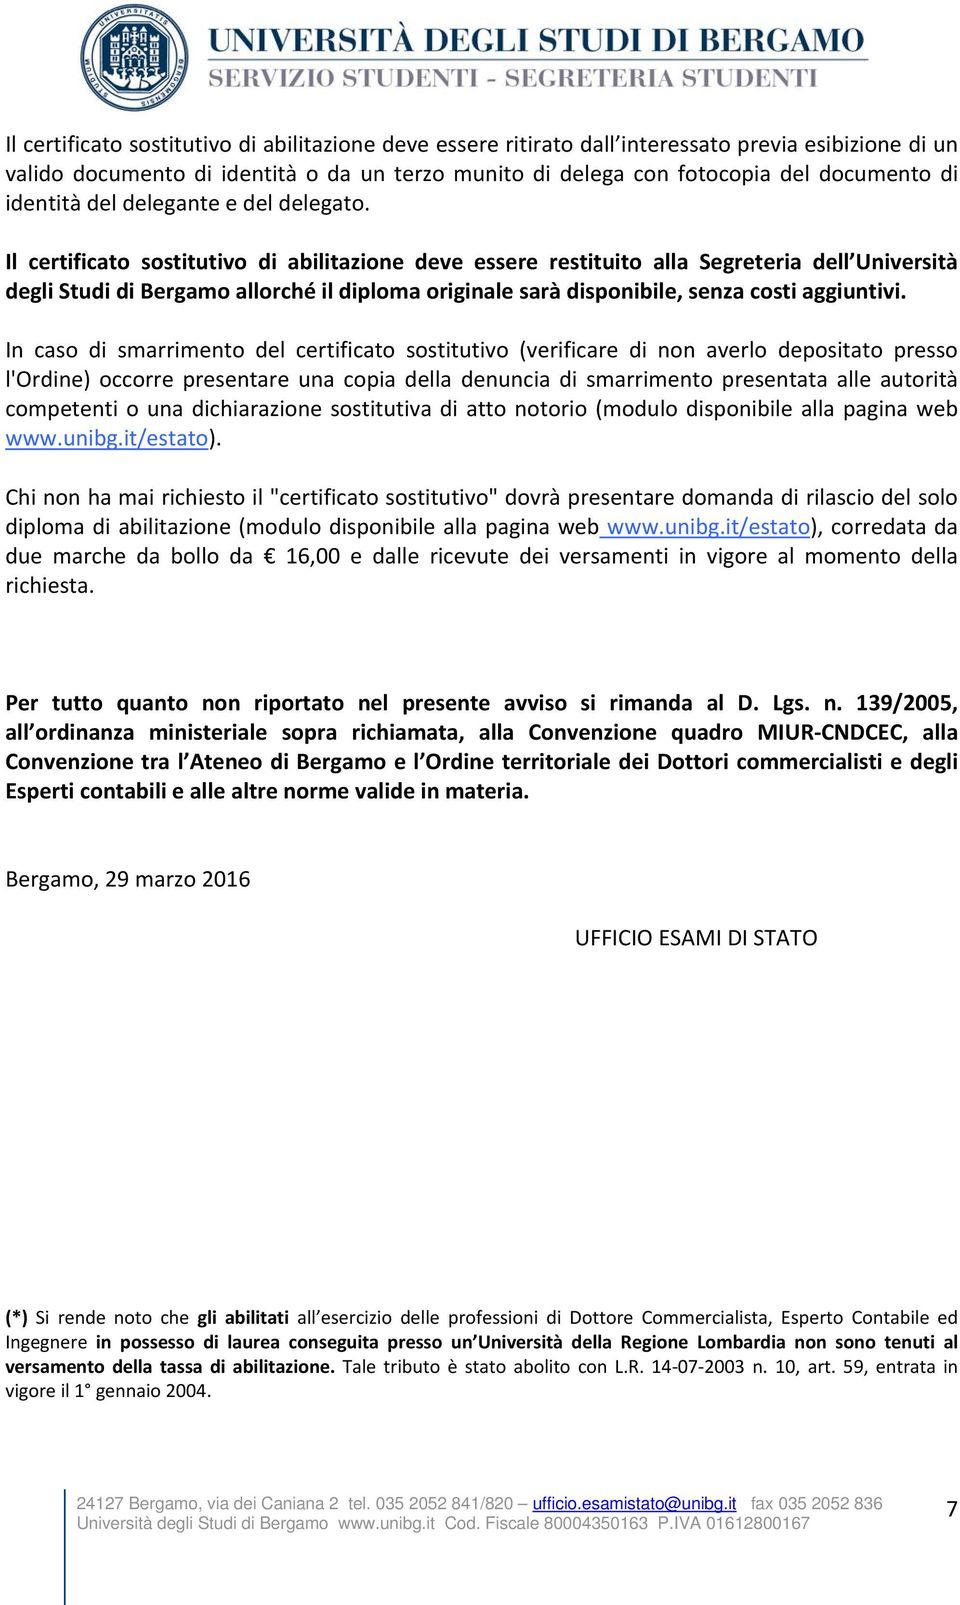 Il certificato sostitutivo di abilitazione deve essere restituito alla Segreteria dell Università degli Studi di Bergamo allorché il diploma originale sarà disponibile, senza costi aggiuntivi.